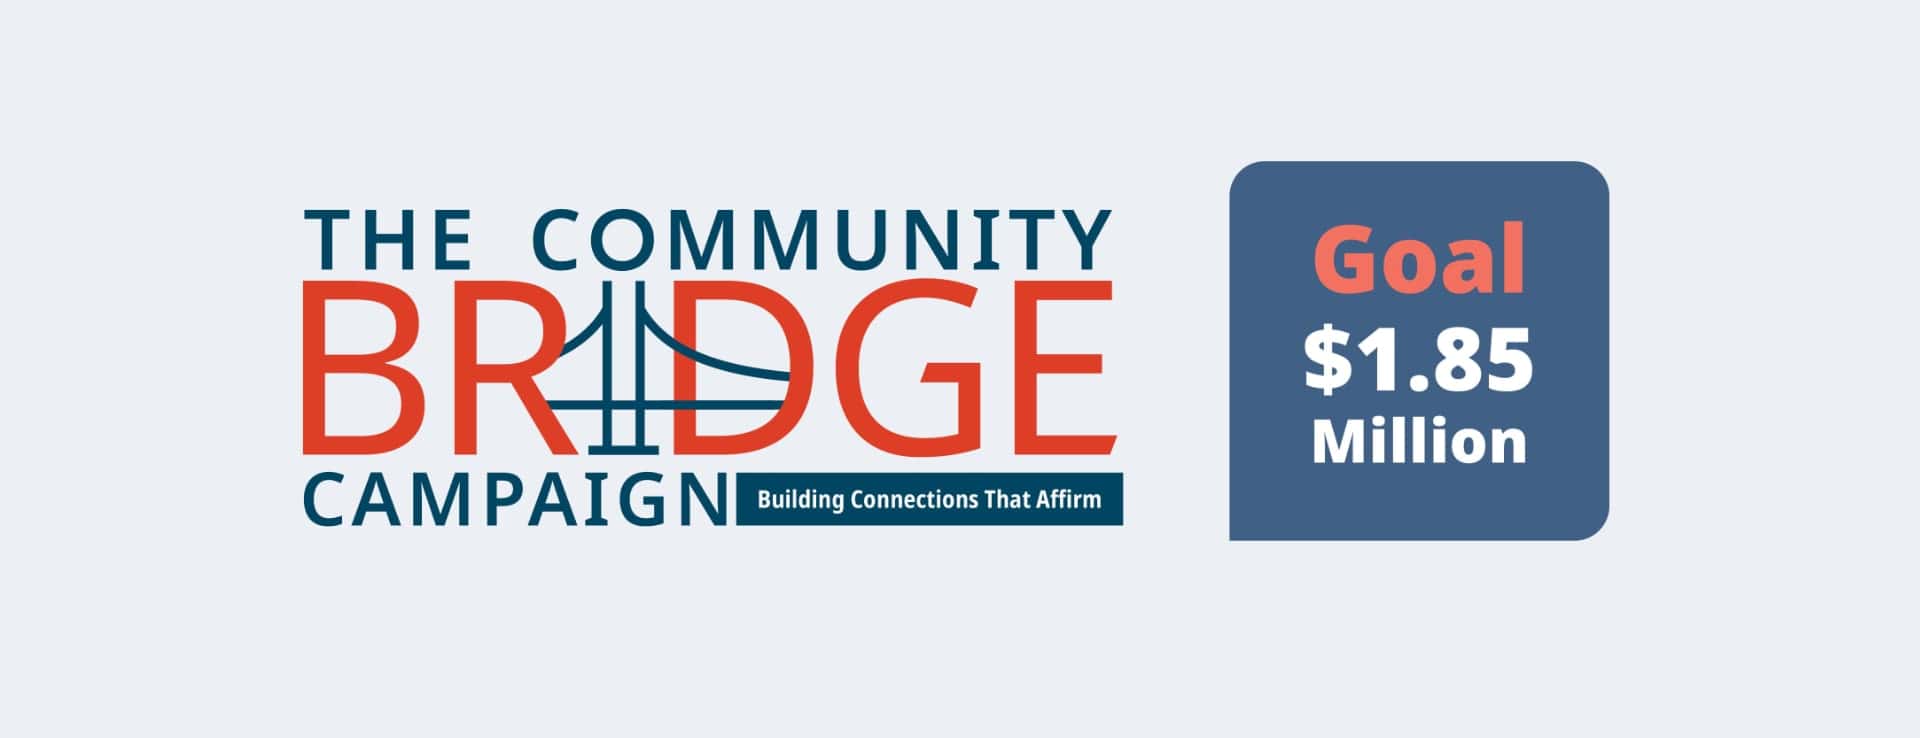 The Community Bridge Campaign